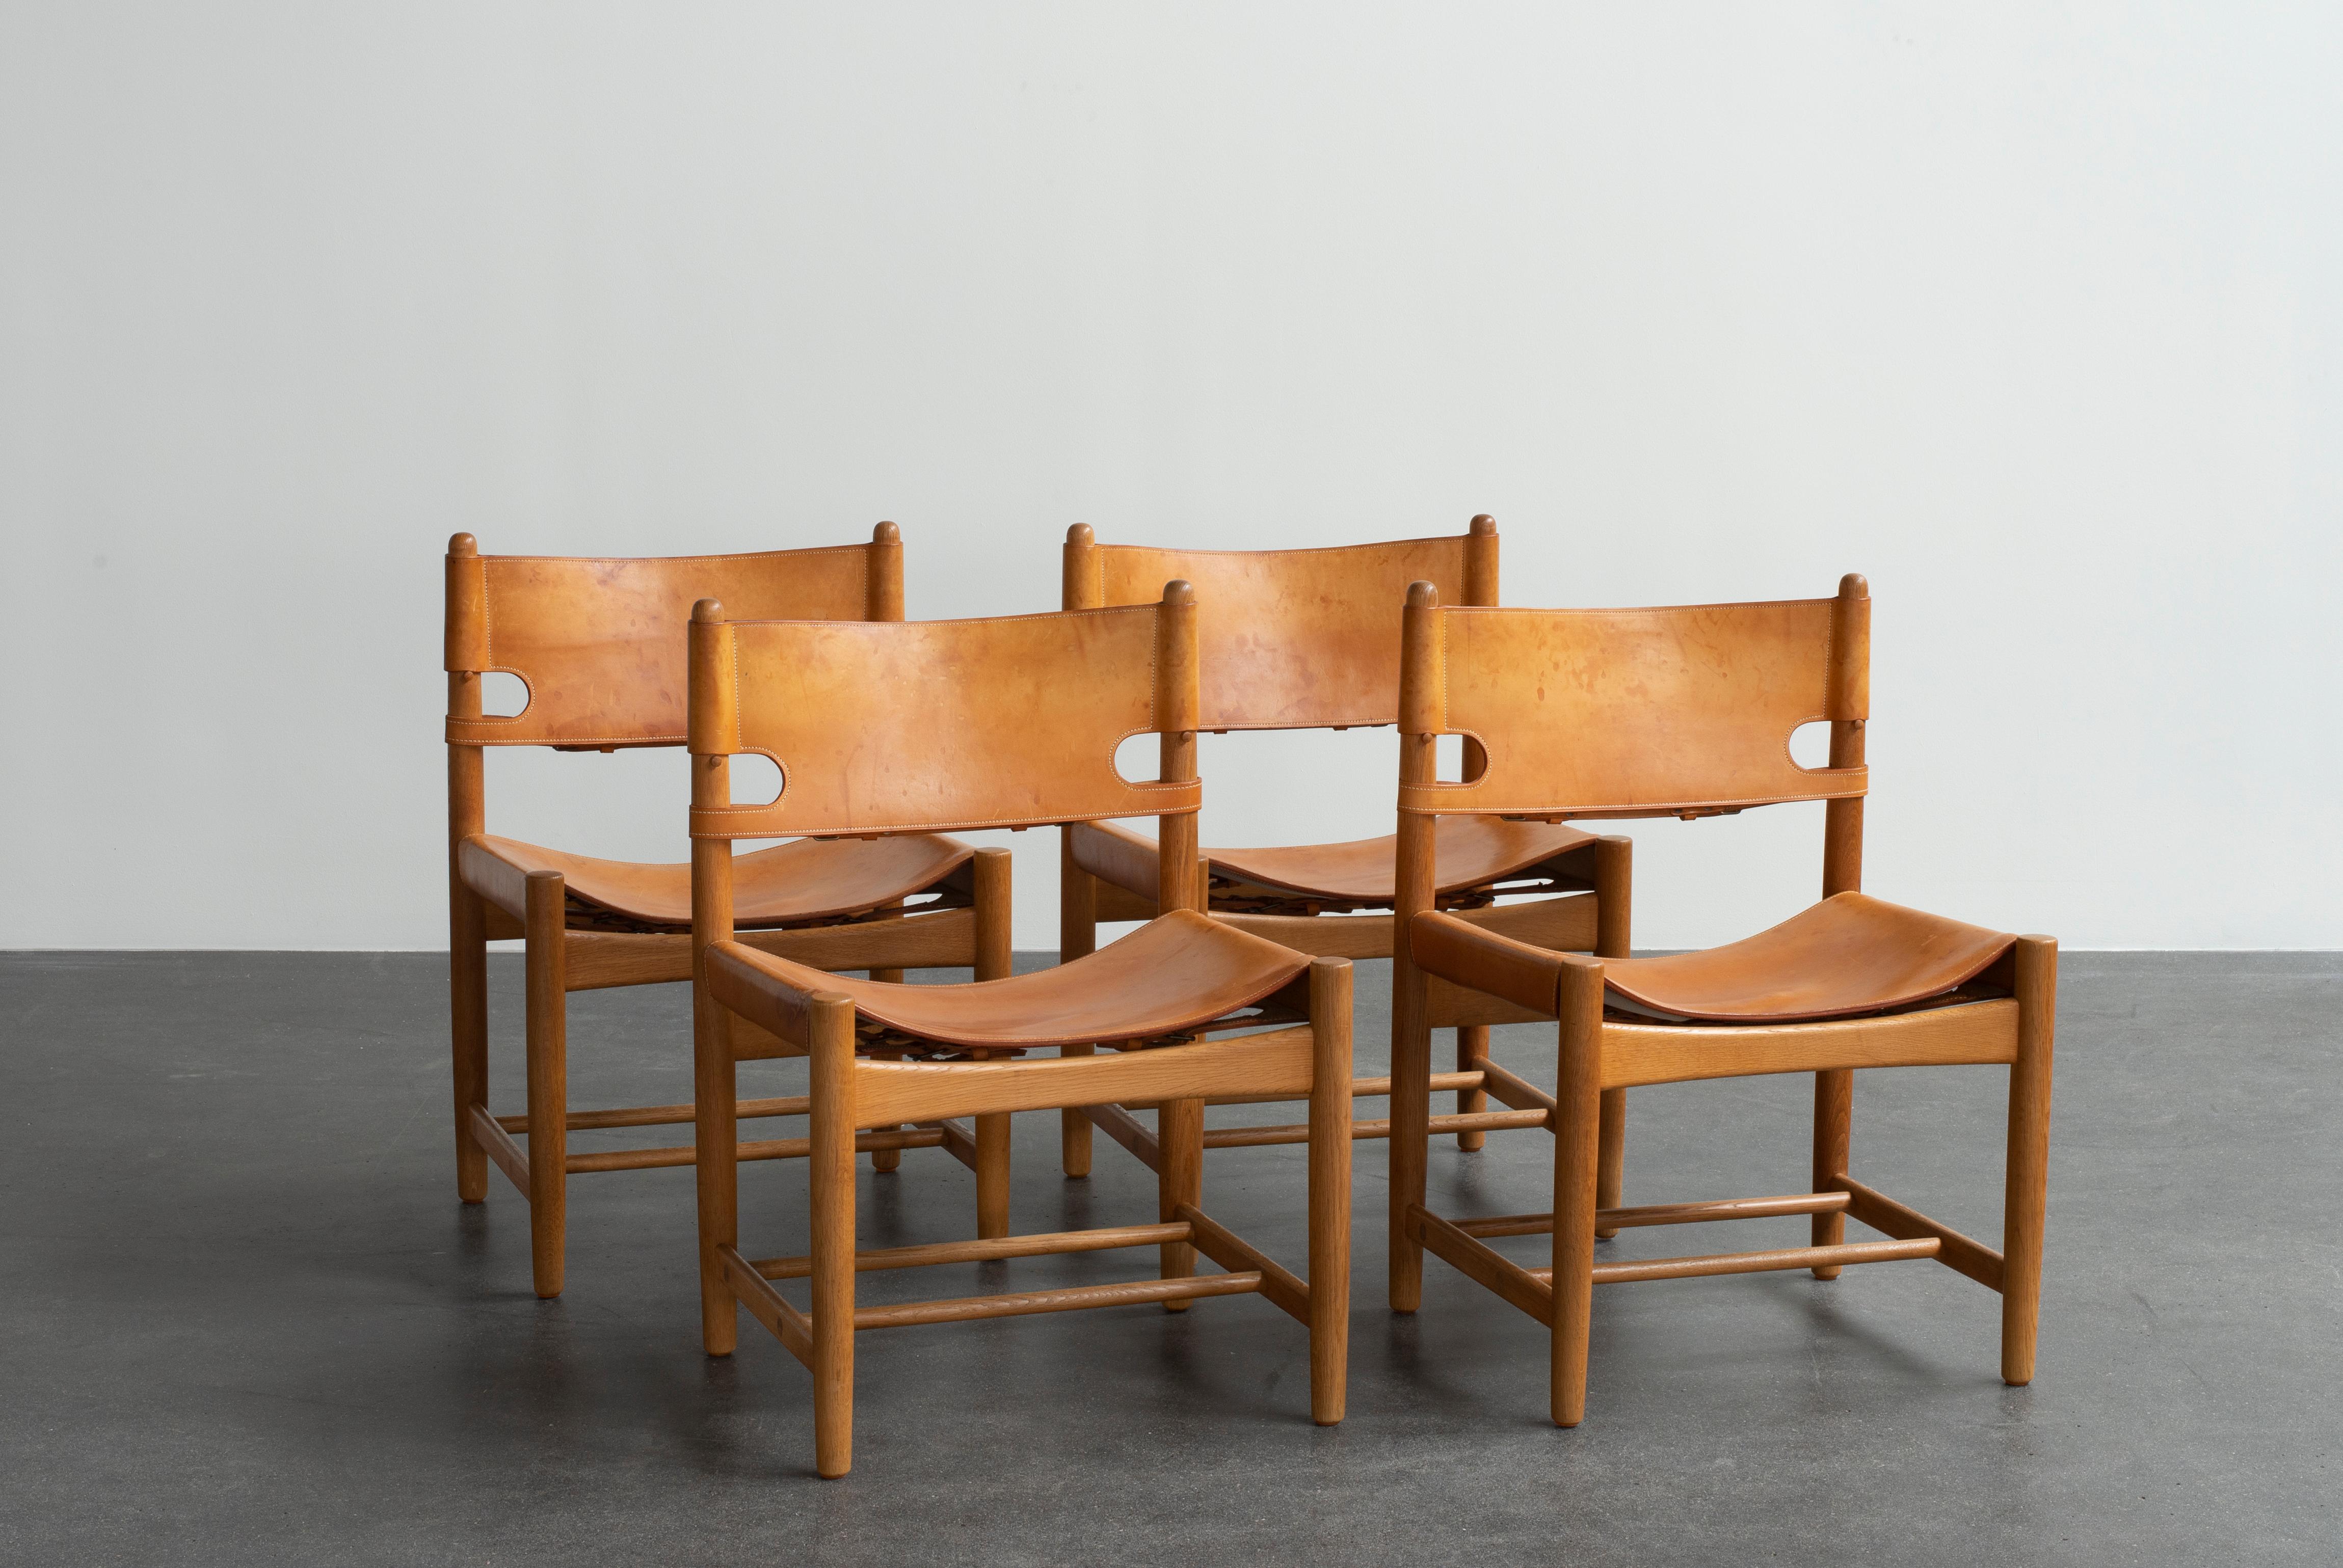 Ensemble de quatre chaises de salle à manger Børge Mogensen en chêne et cuir tanné naturel. Exécuté par Fredericia Furniture.